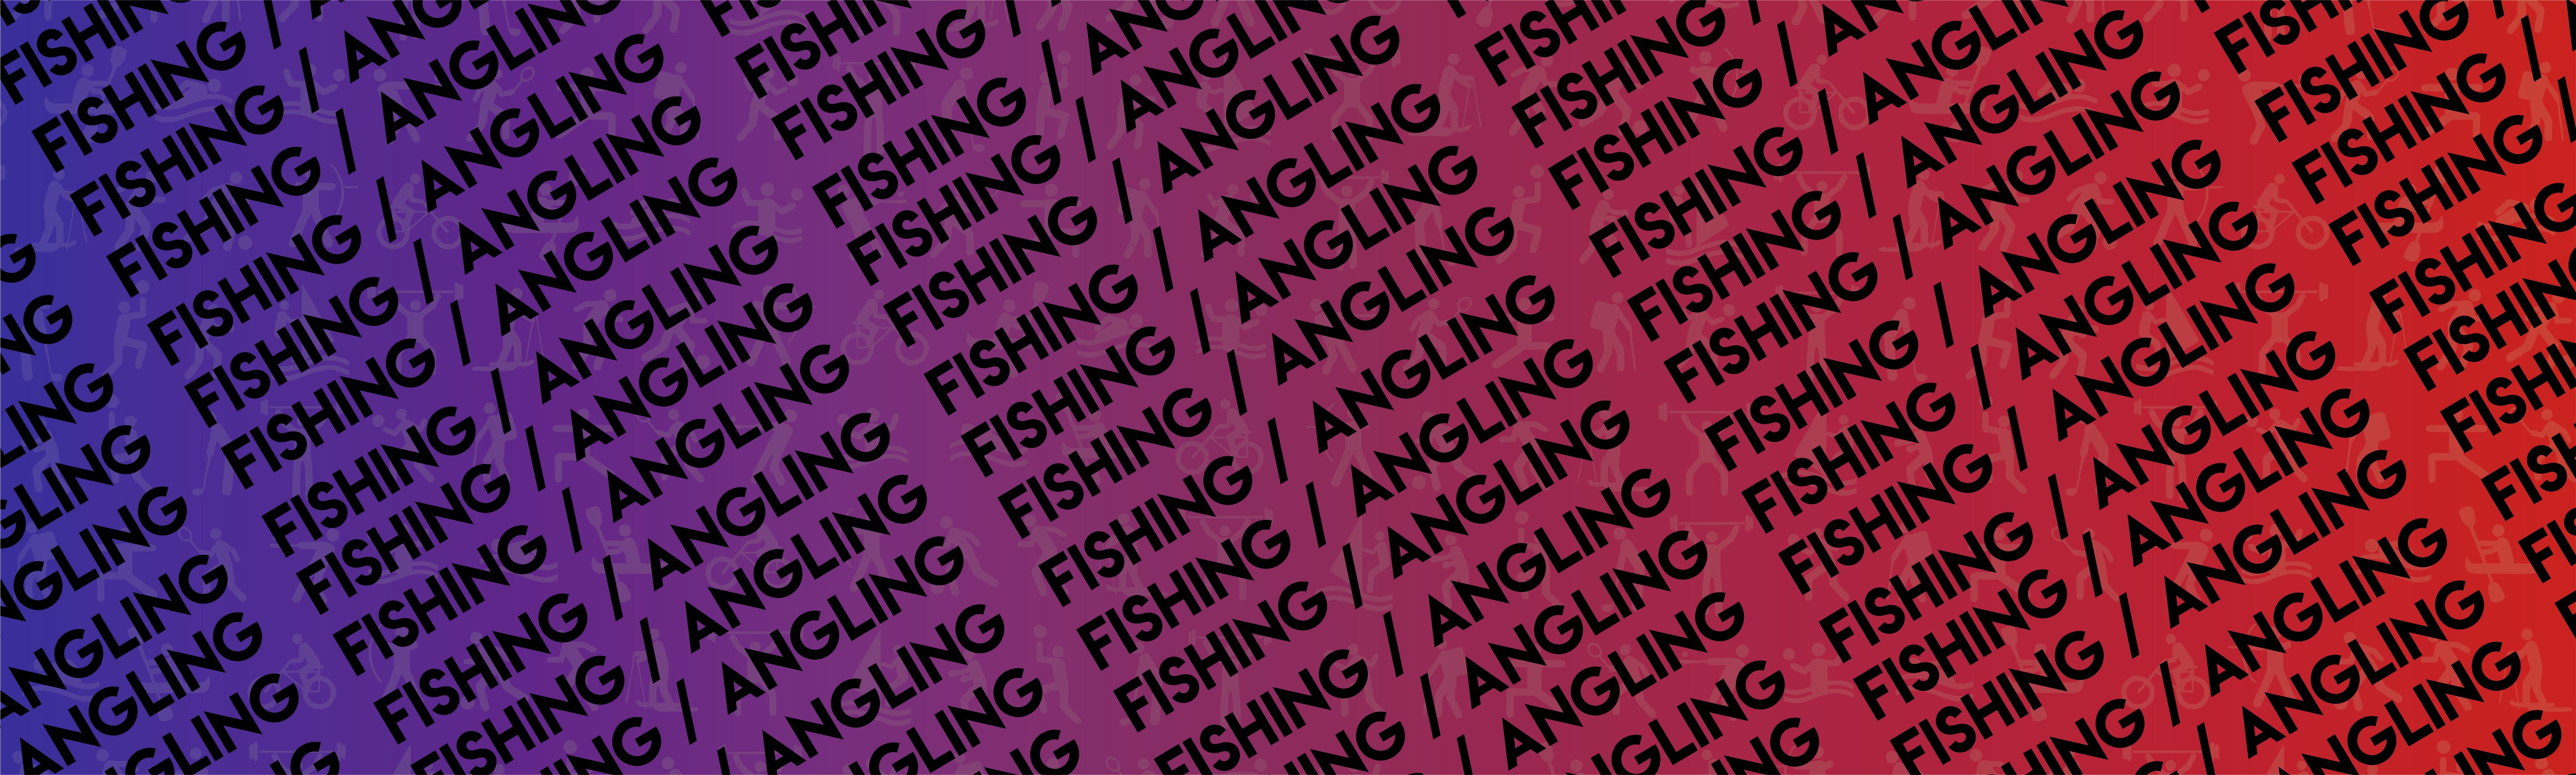 Fishing/Angling